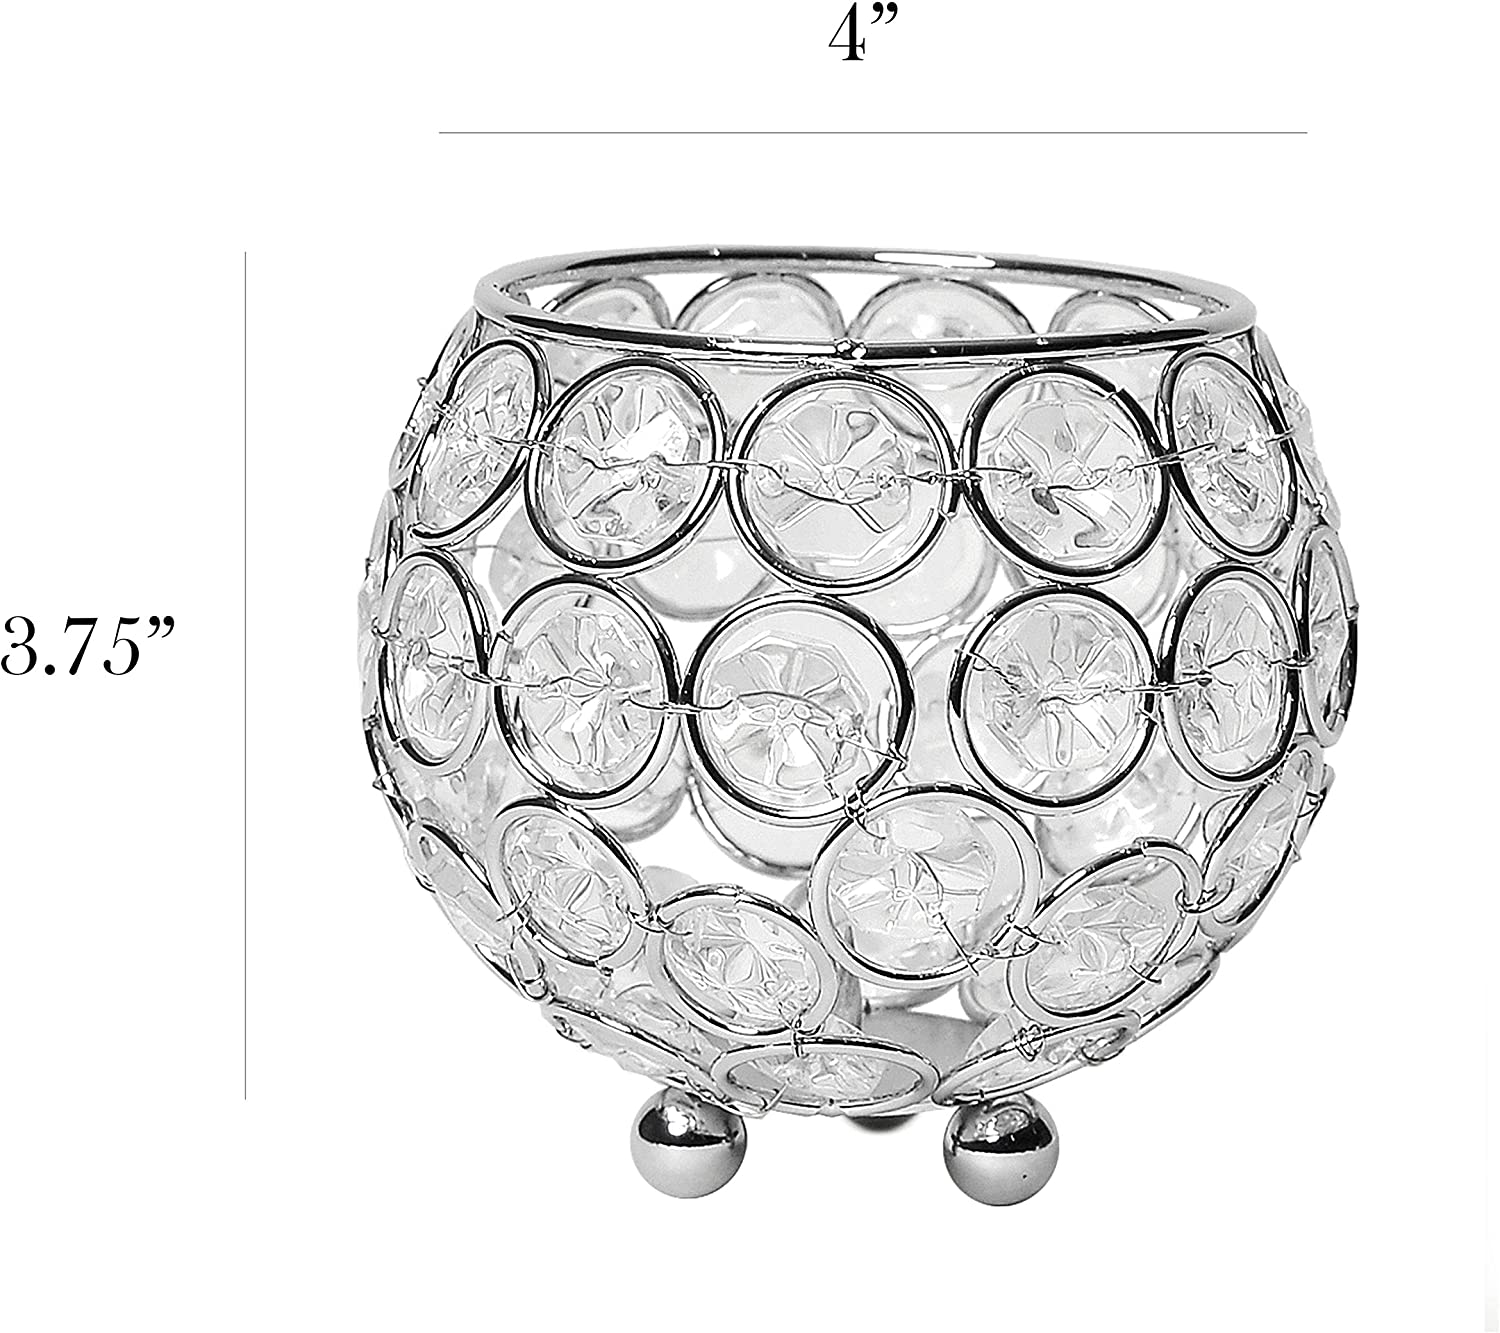 Elegant Designs Elipse Crystal Circular Bowl Candle Holder, Flower Vase, Wedding Centerpiece, Favor, 3.75 Inch, Chrome